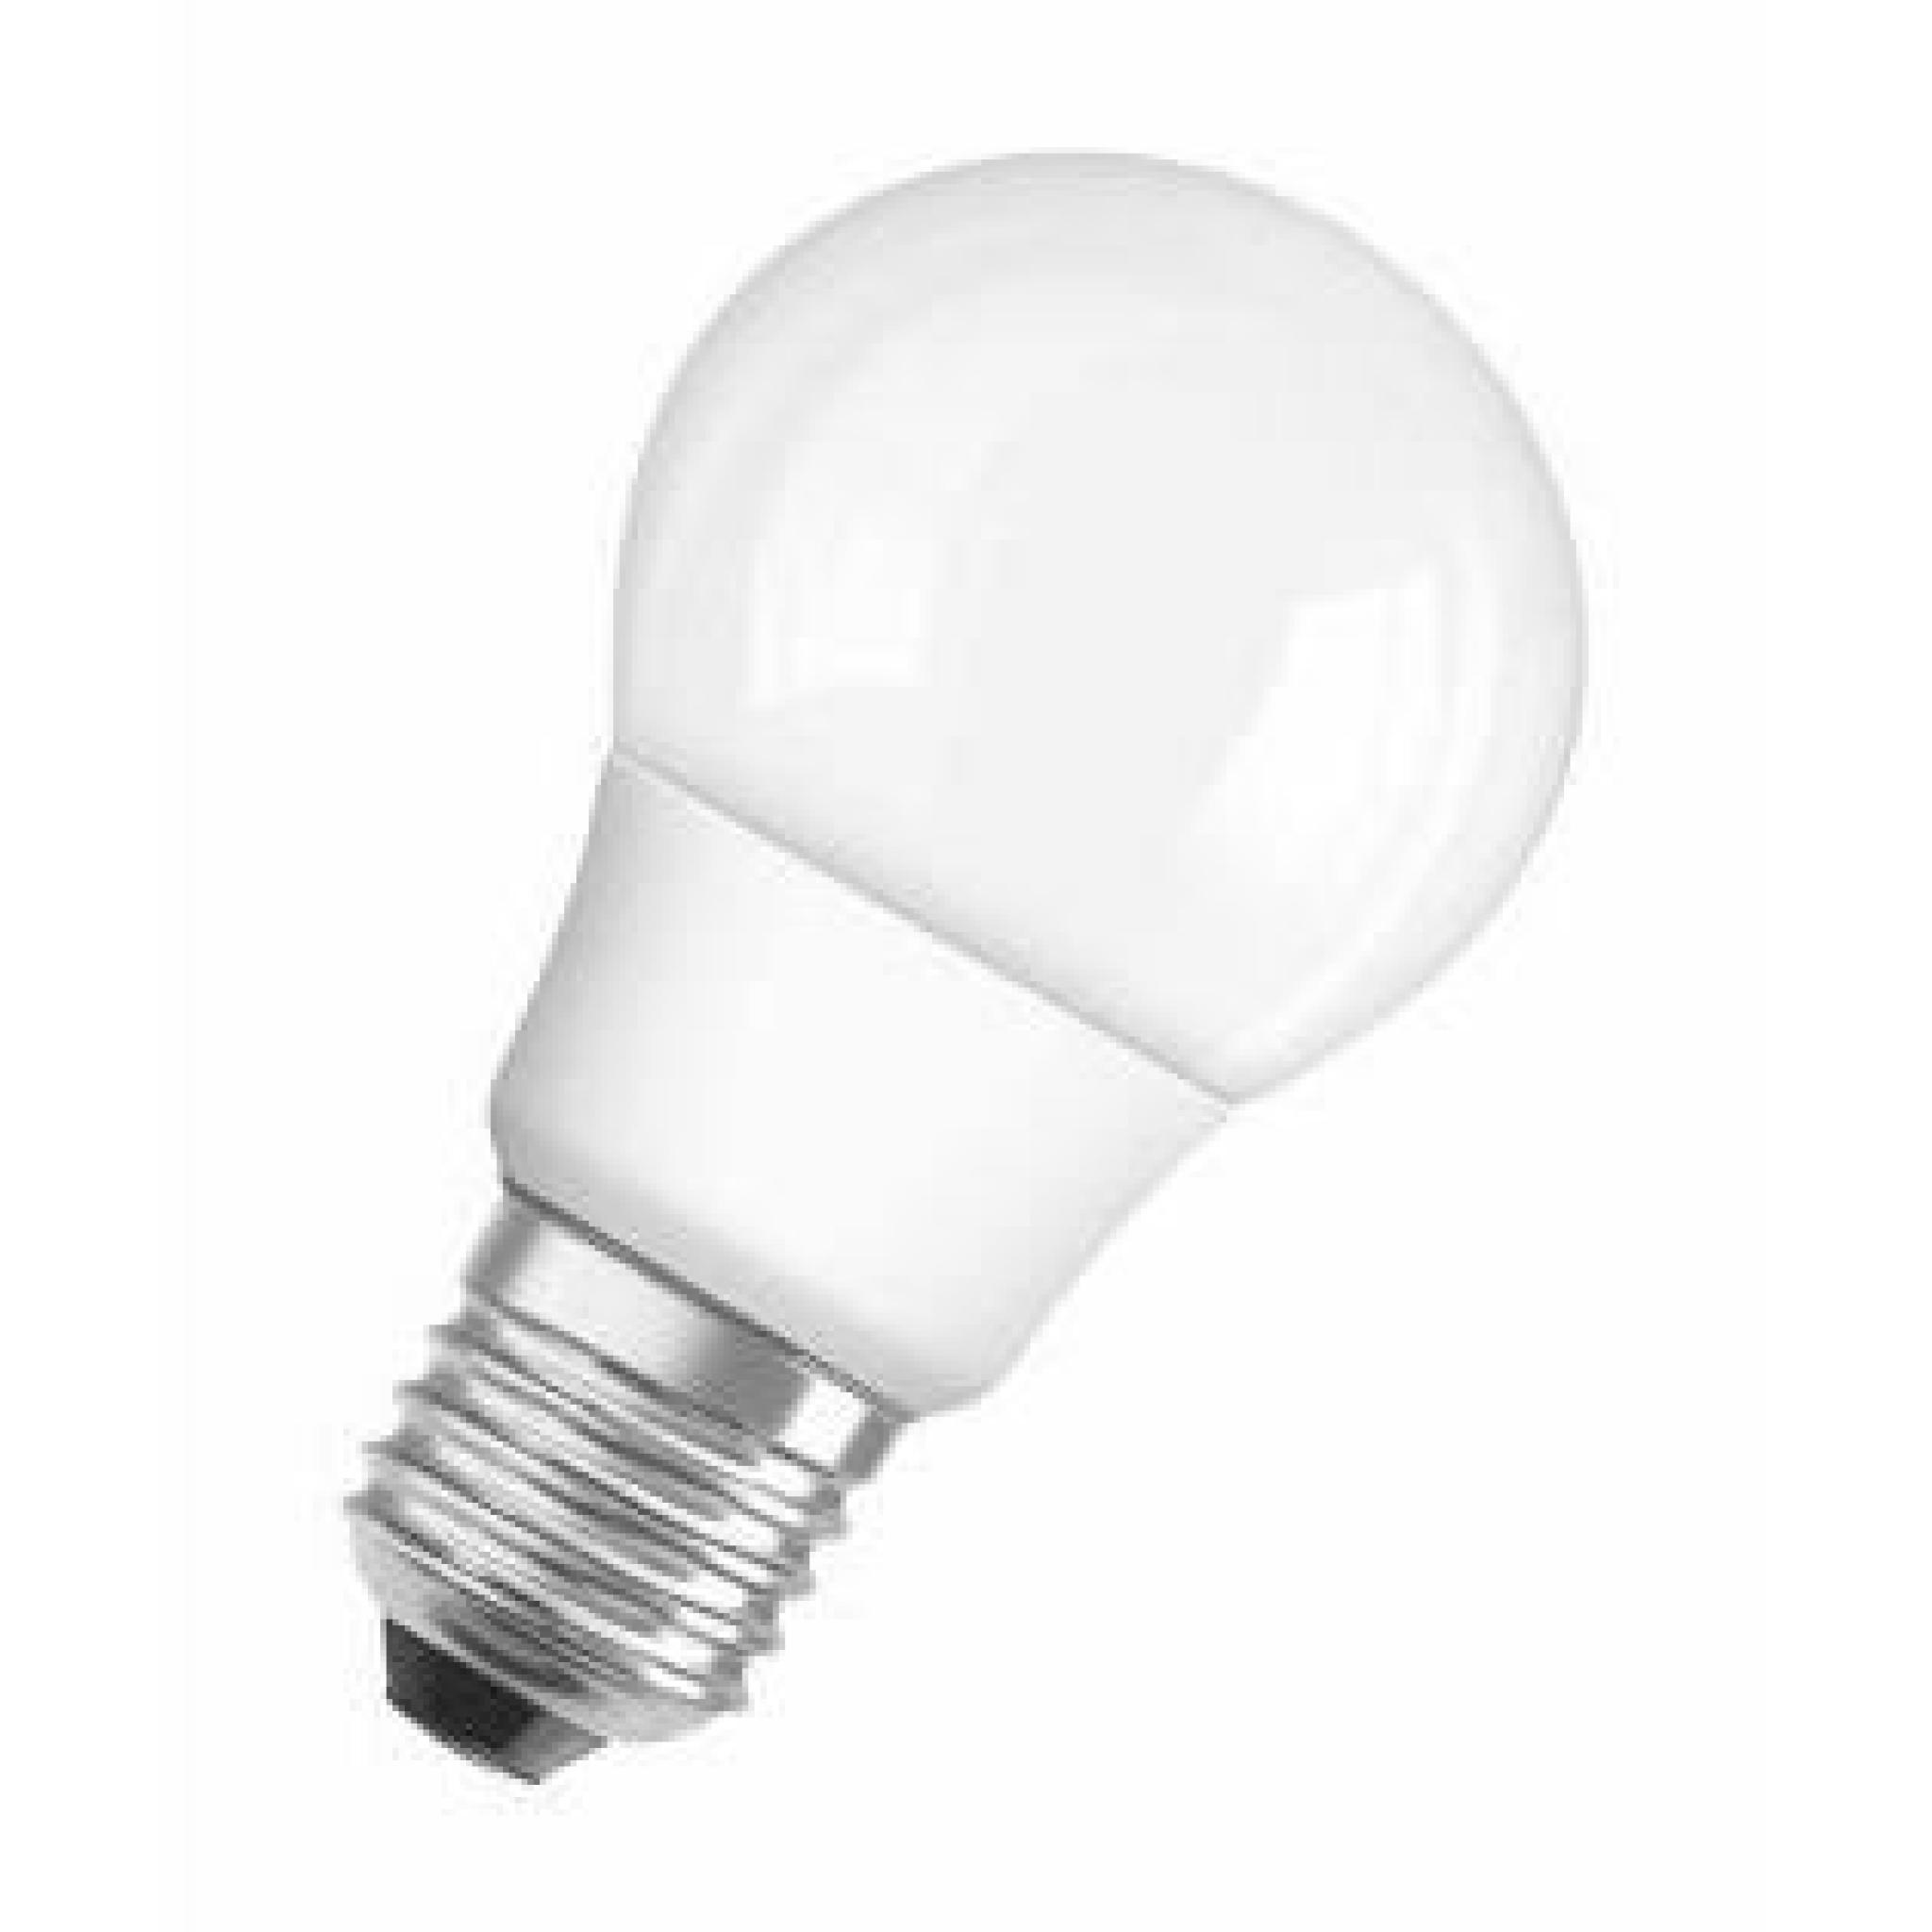 LAMPE LED PARATHOM CLASSIC A 40 6 W / 840 FR E27 OSRAM